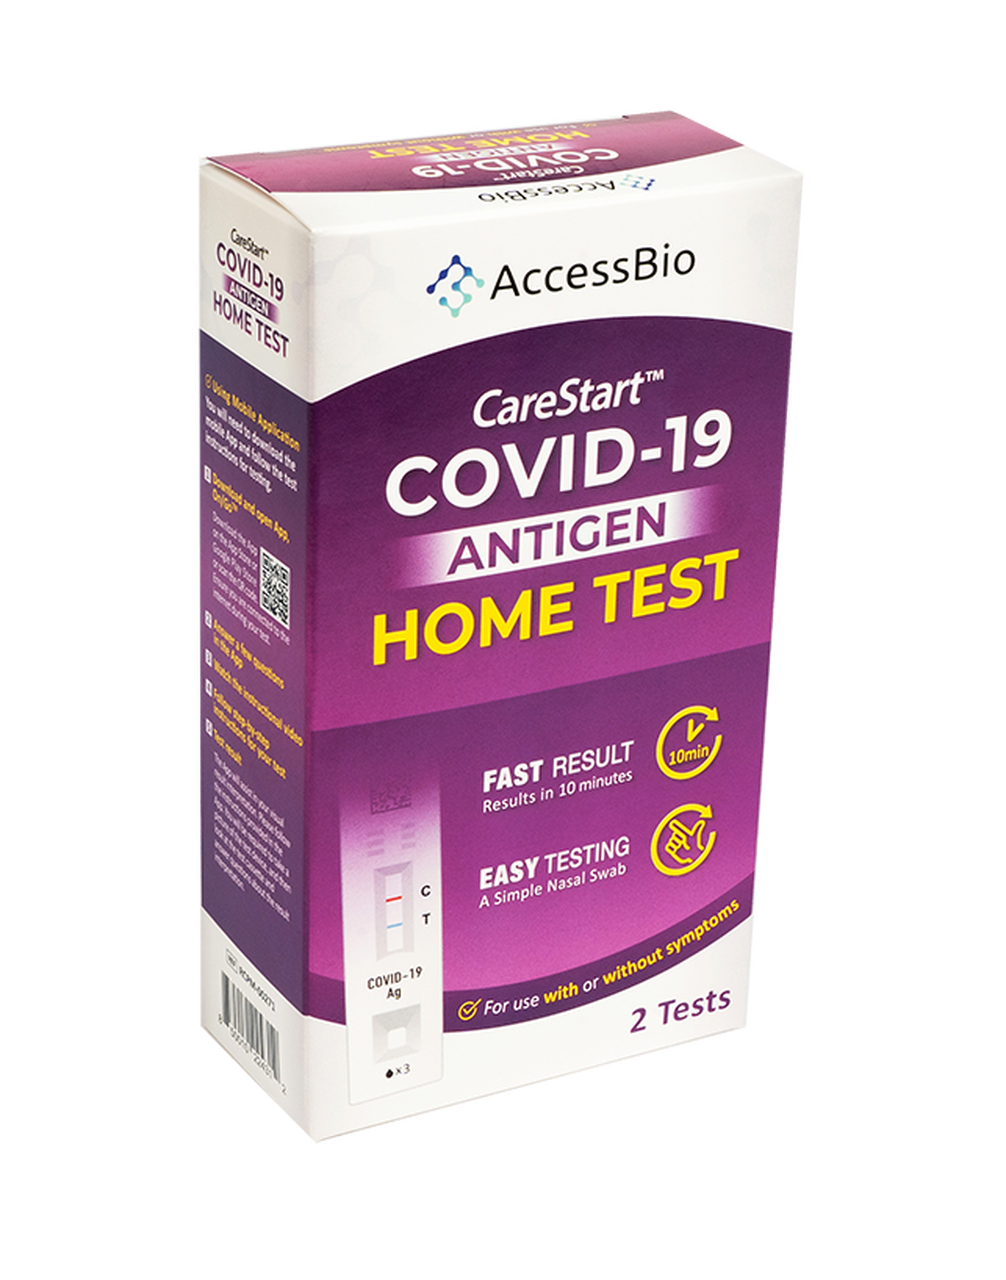 Carestart™ COVID-19 Antigen